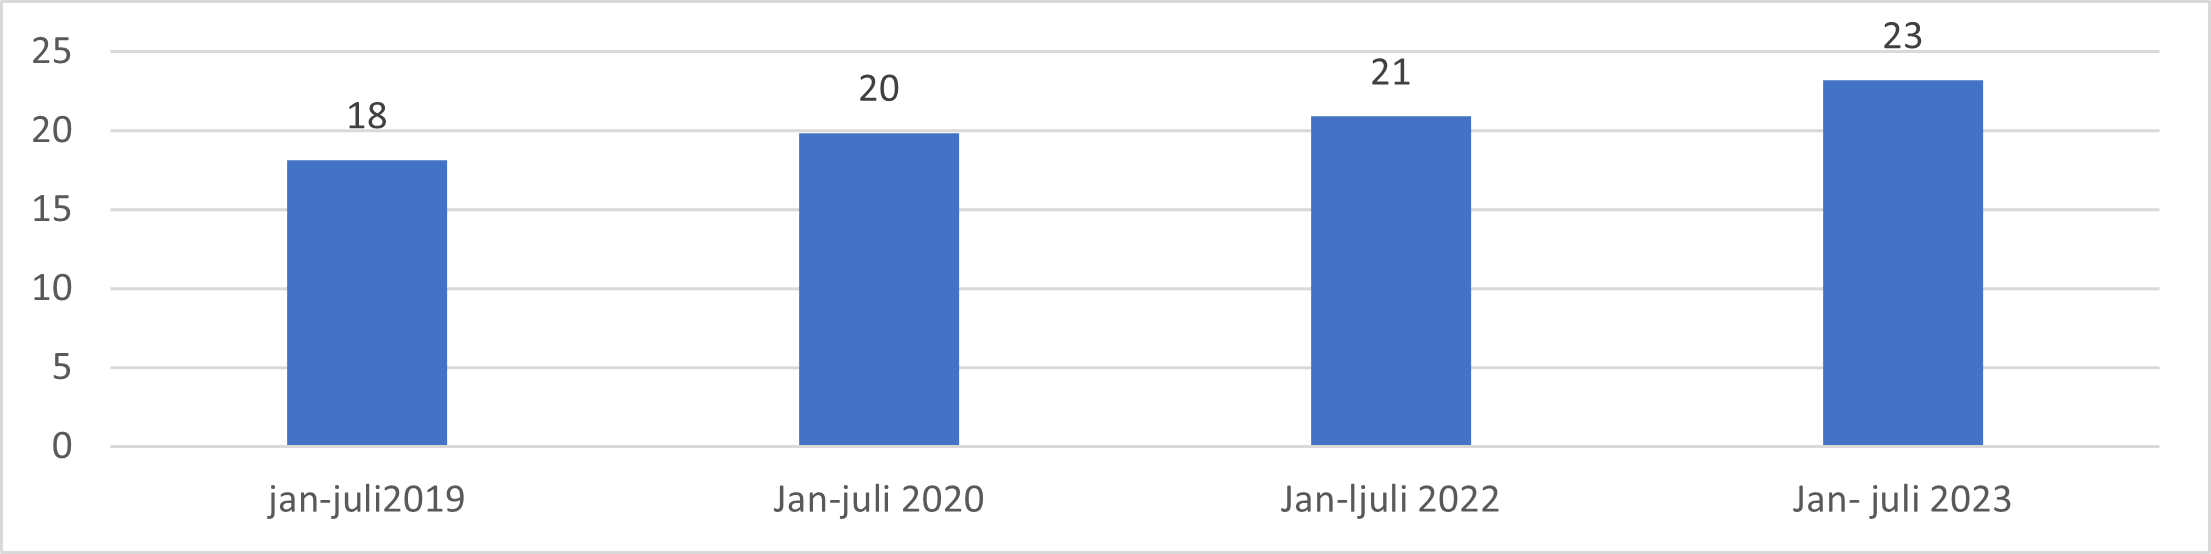 Antall beregnede vikardager per 1000 listeinnbygger. Første halvår i årene 2019 til 2023.